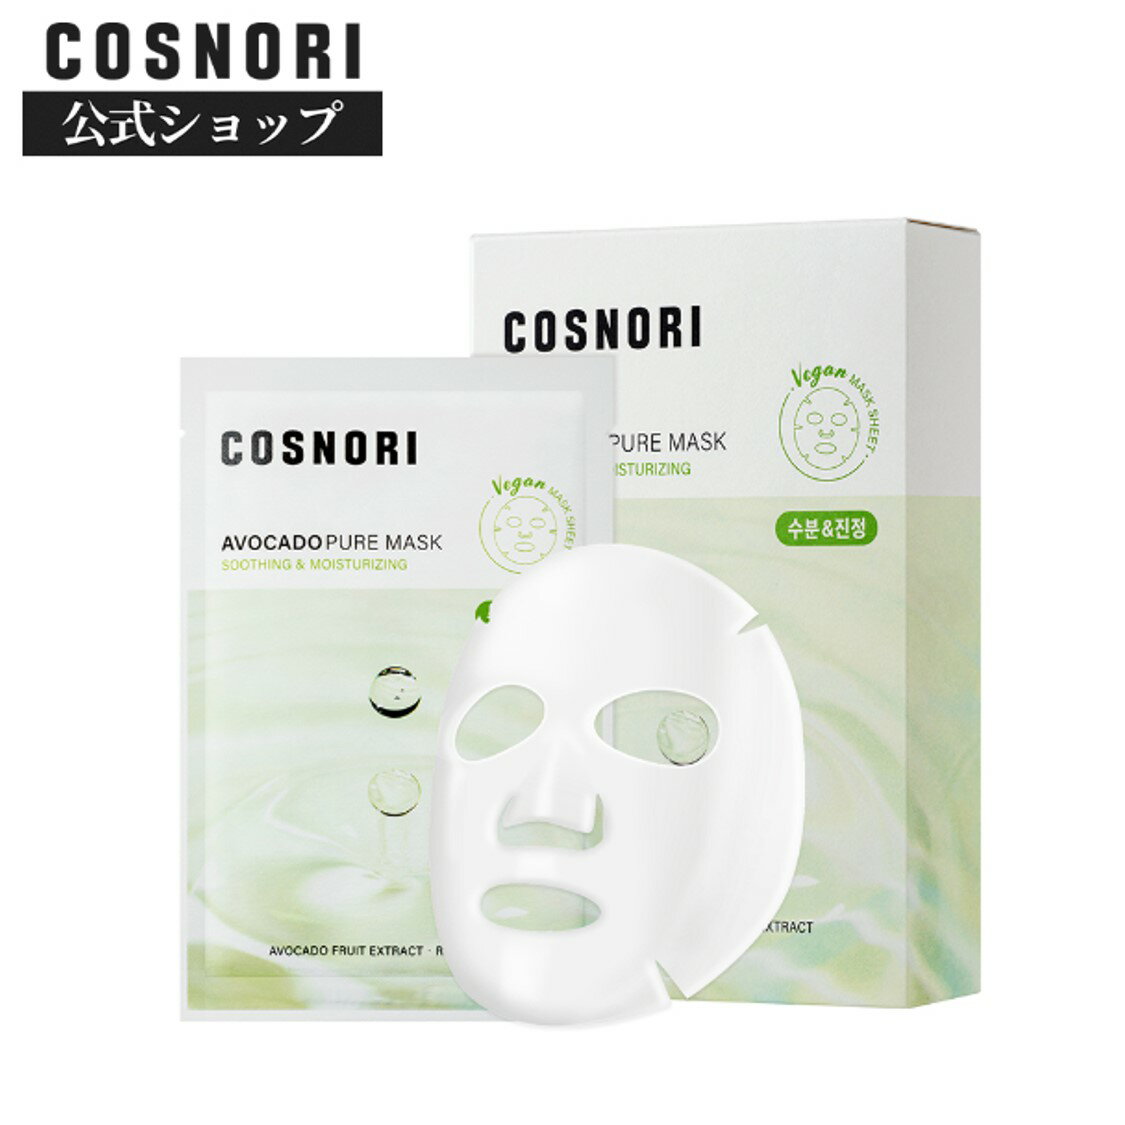 COSNORI 公式 送料無料 COSNORI /アボカドマスクパック10枚 韓国マスクパック シートマスク パック マスク フェイスマスク 韓国コスメ コスノリ